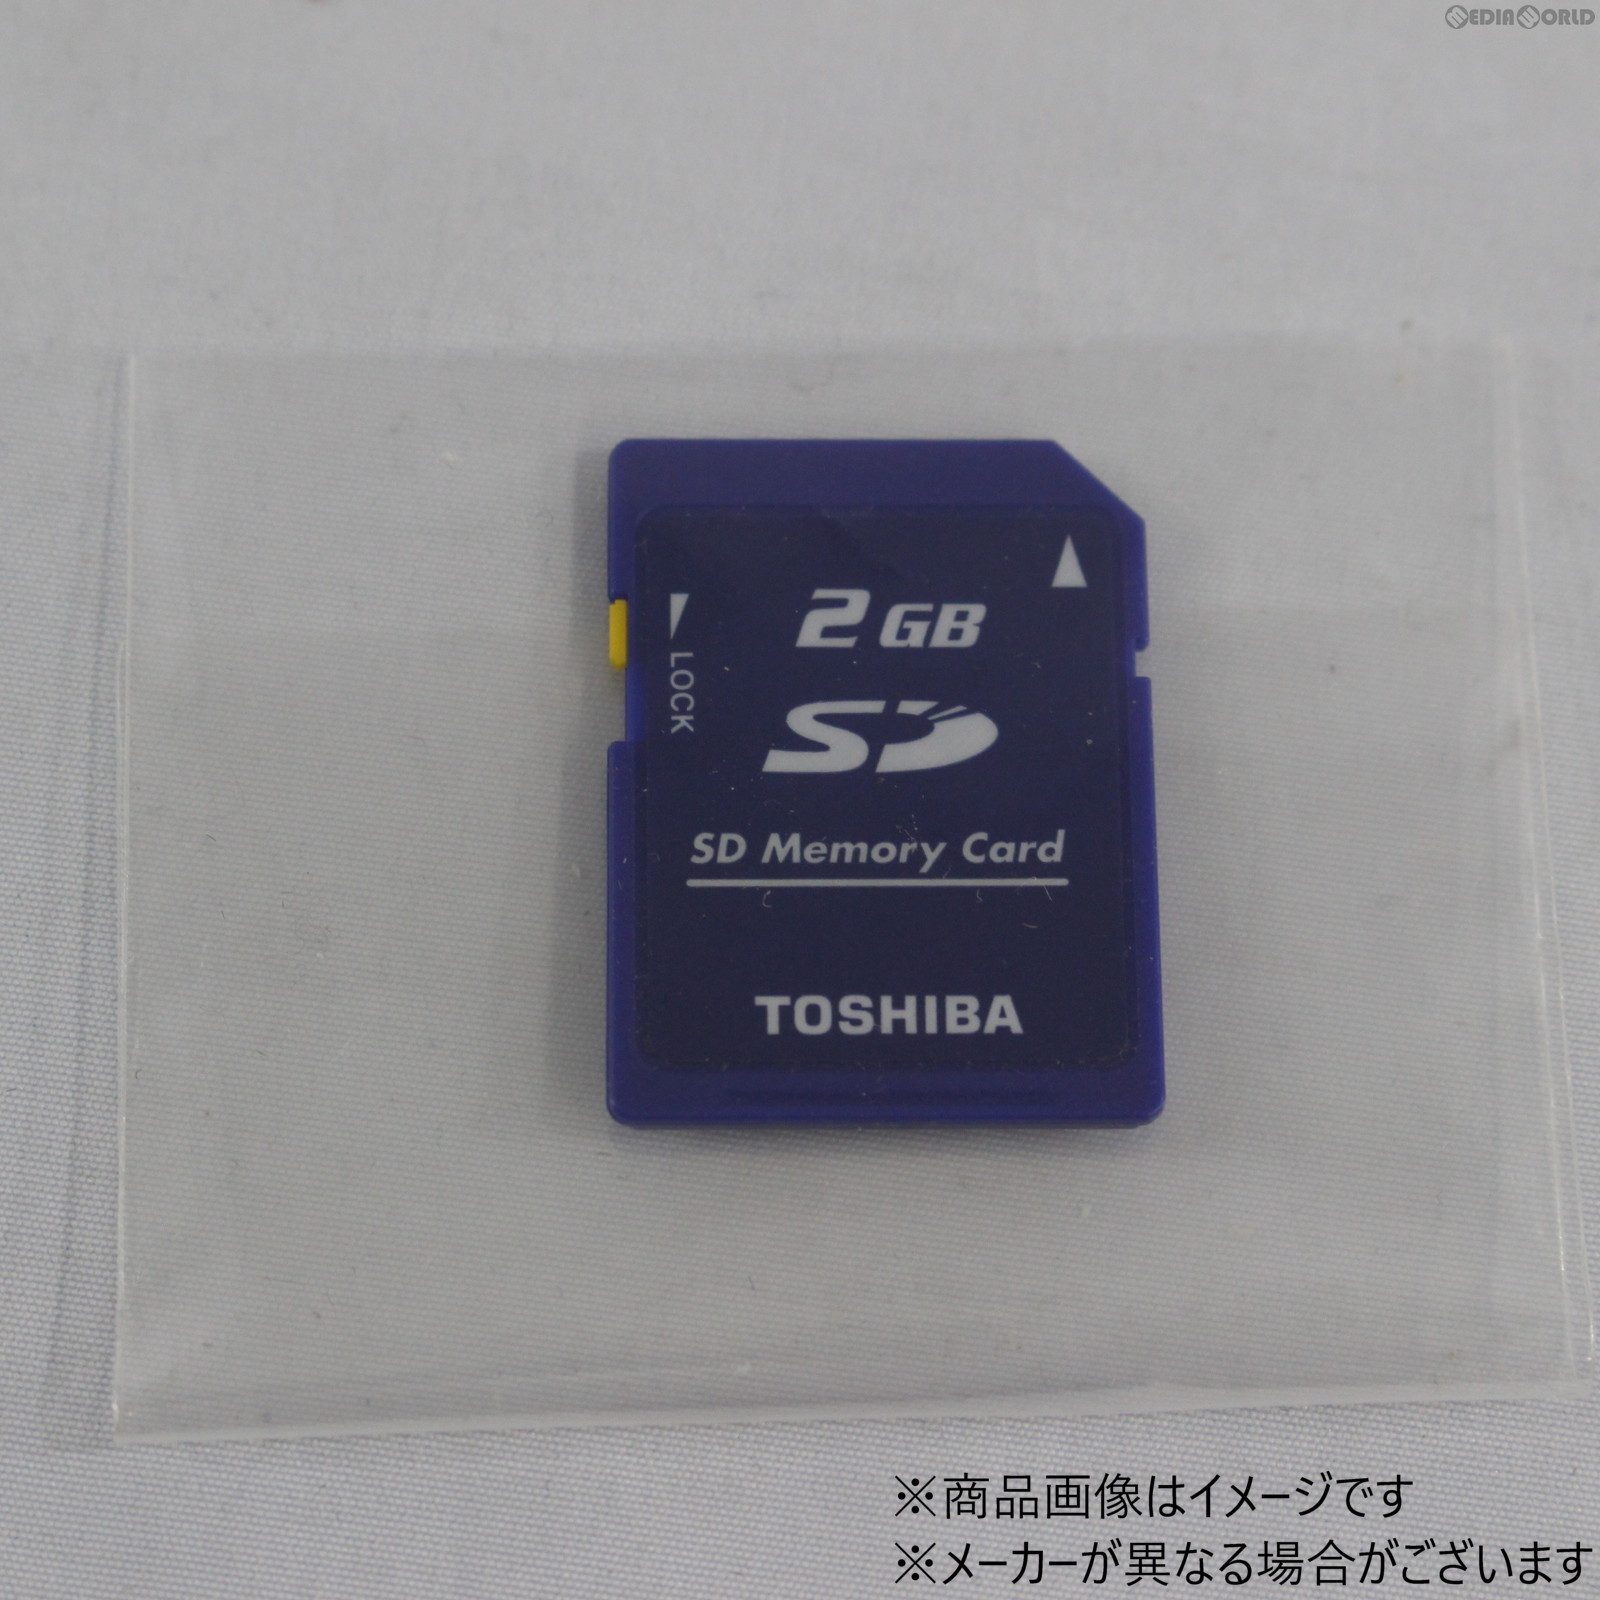 【中古即納】[ACC][3DS]SDメモリーカード 2GB nintendo互換製品 ※3DSで動作確認済(20061231)